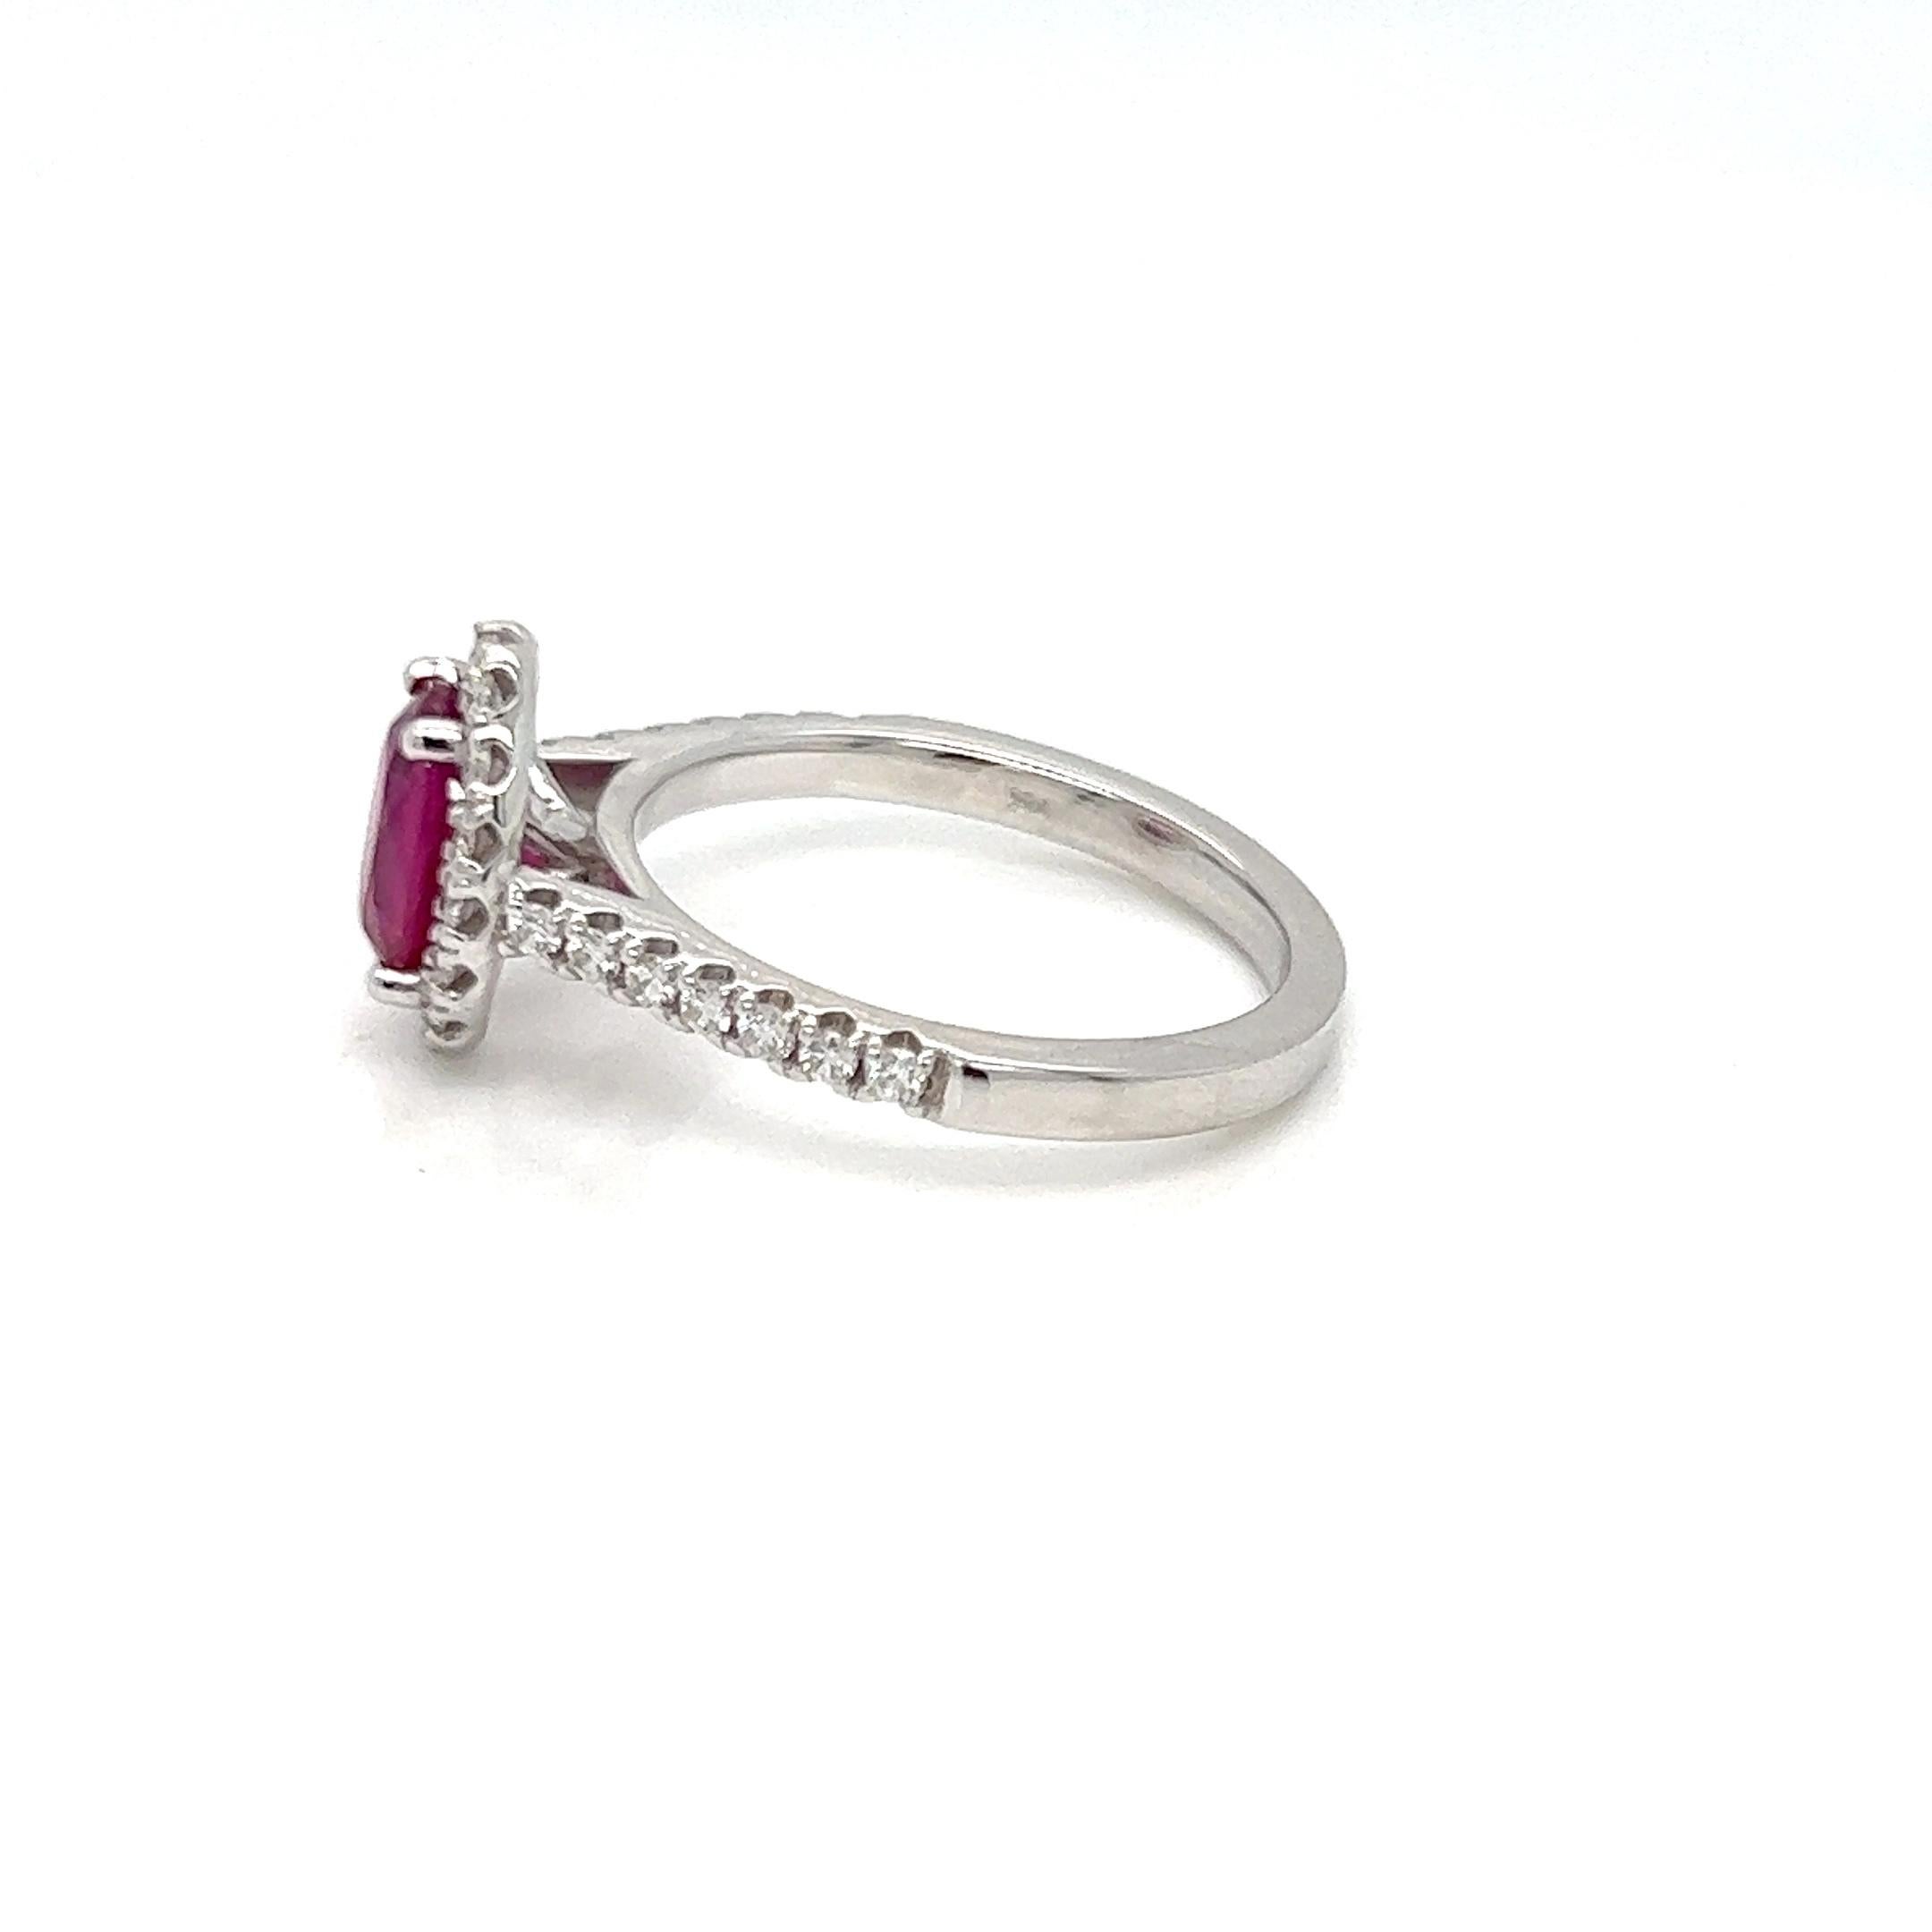 Nous vous présentons notre magnifique bague de fiançailles solitaire ovale rubis diamant halo de 1,82 carat, une représentation classique du luxe et de l'amour. Cette magnifique bague, qui respire l'élégance et le charme et a été fabriquée avec soin